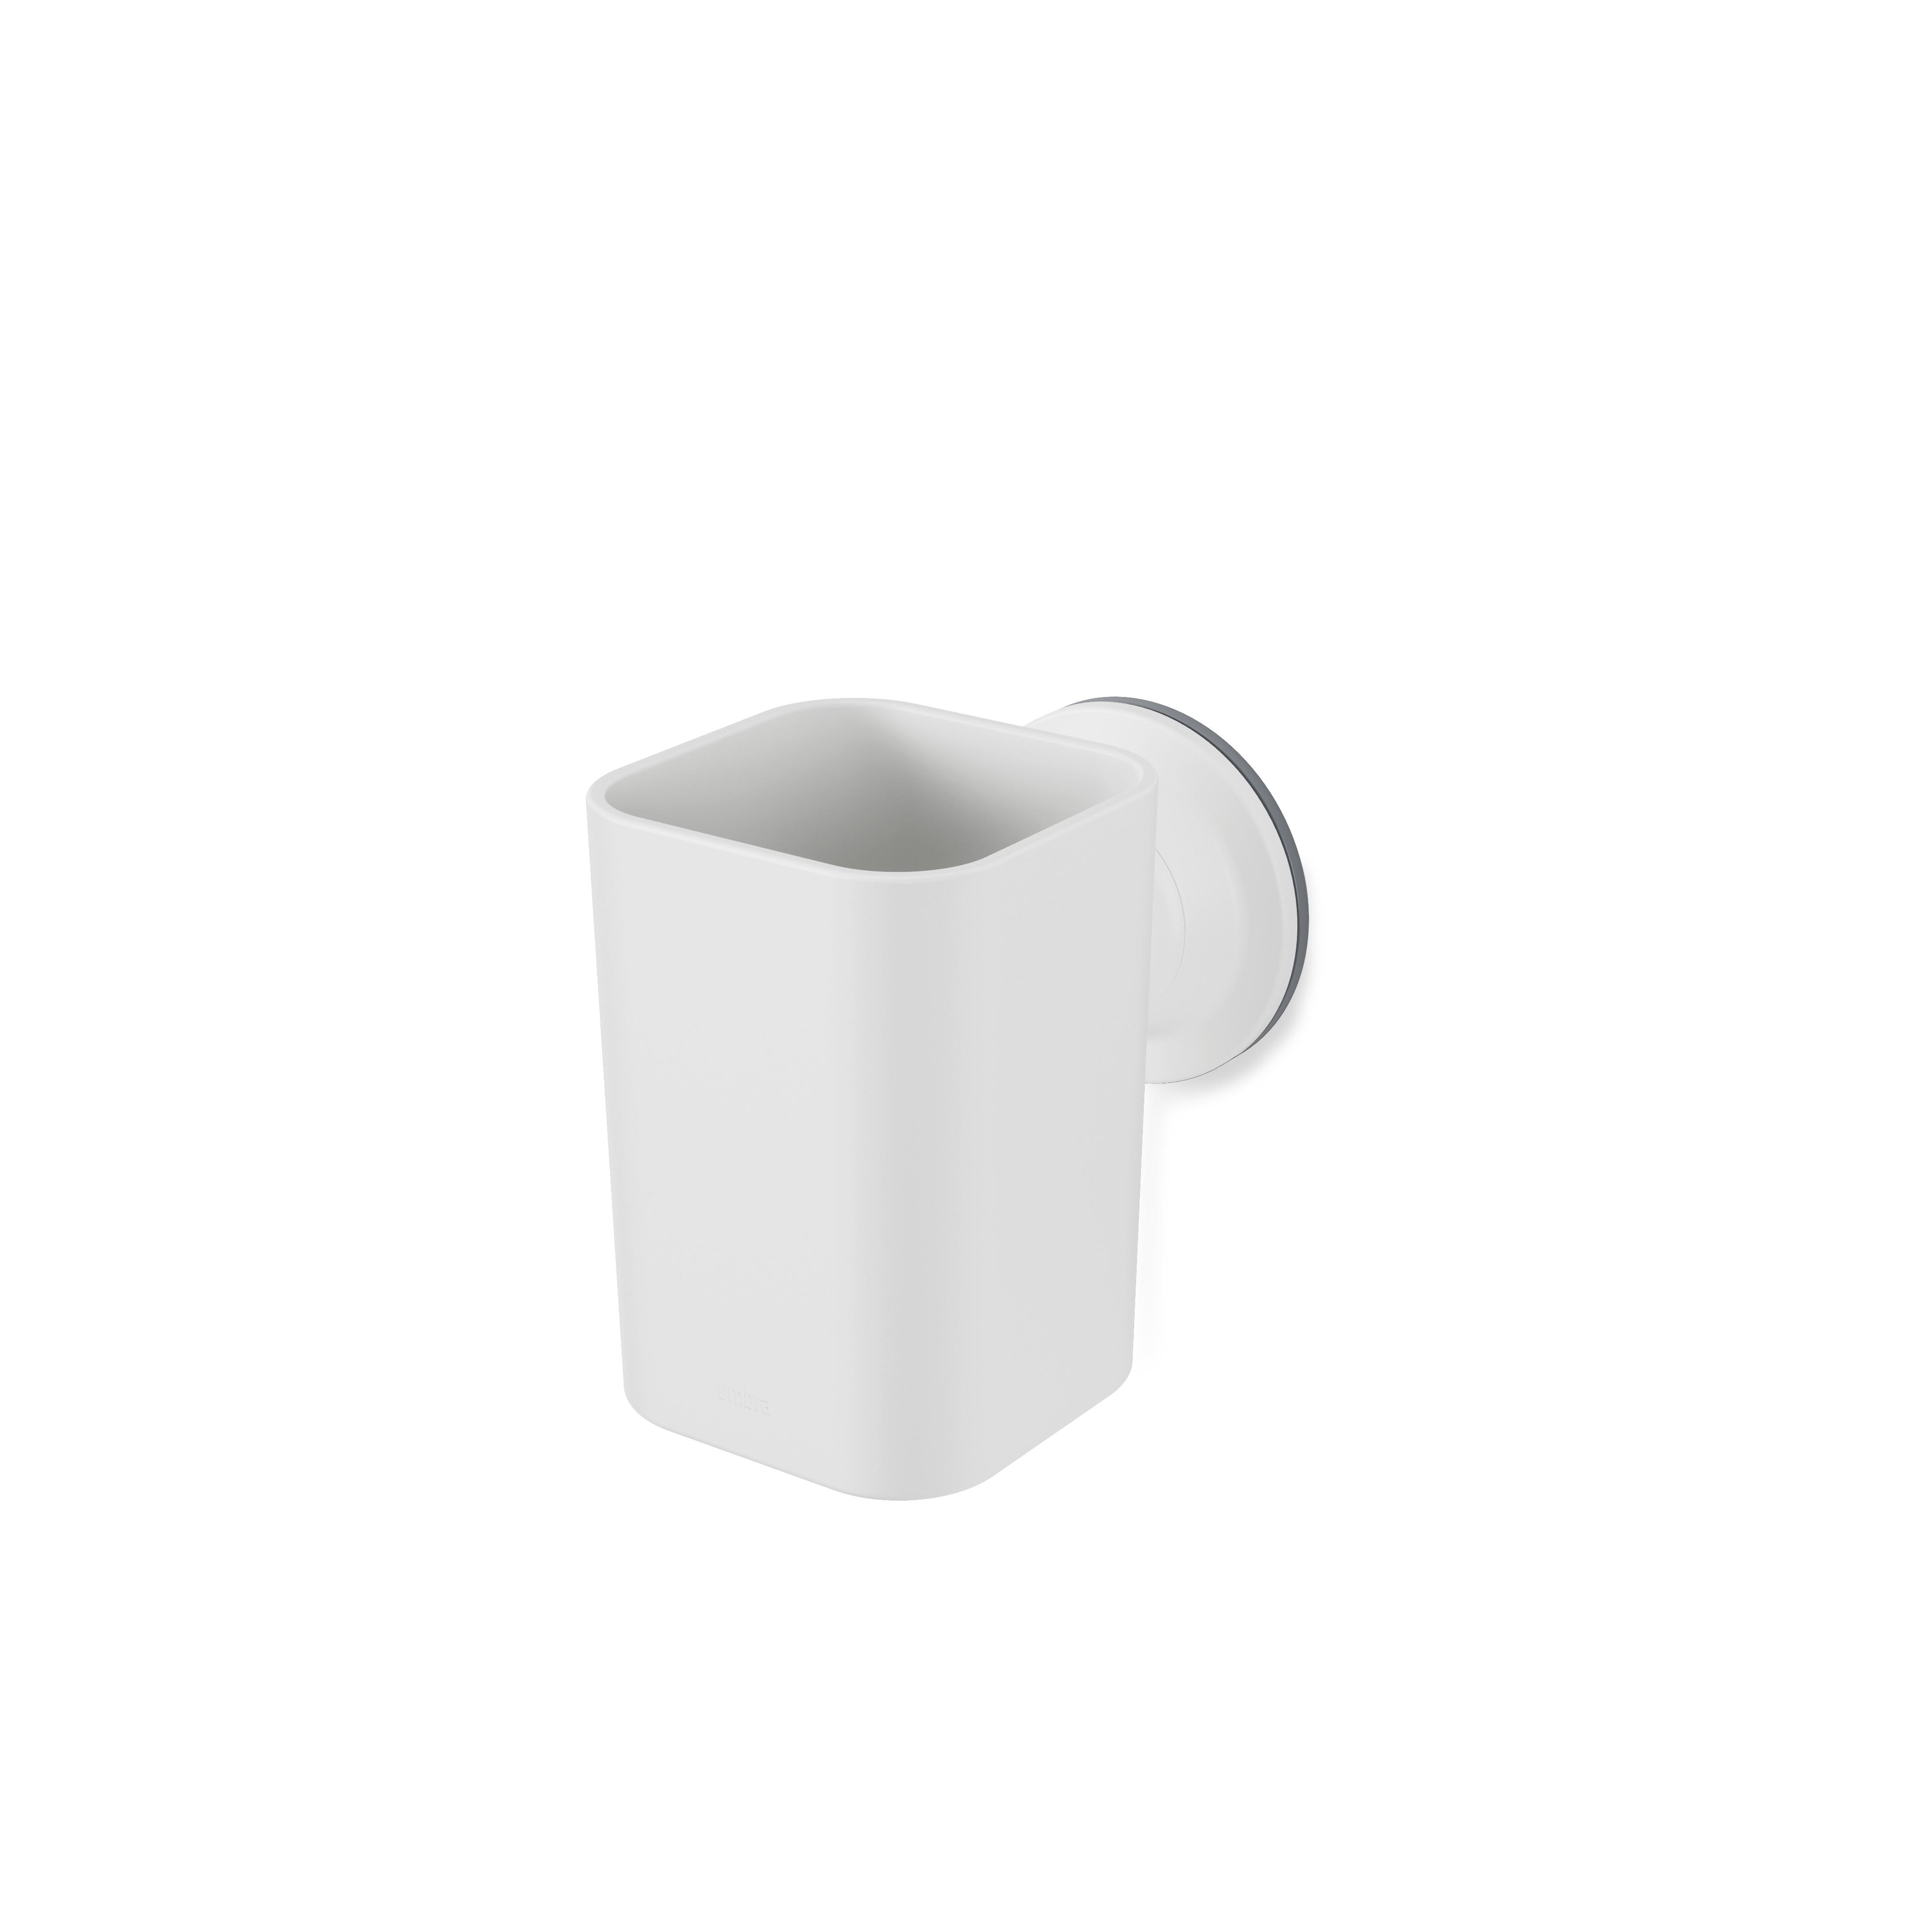 Zahnbürstenhalter Easy in Weiß - Weiß, MODERN, Kunststoff (10,1/11,1/7,2cm) - Premium Living